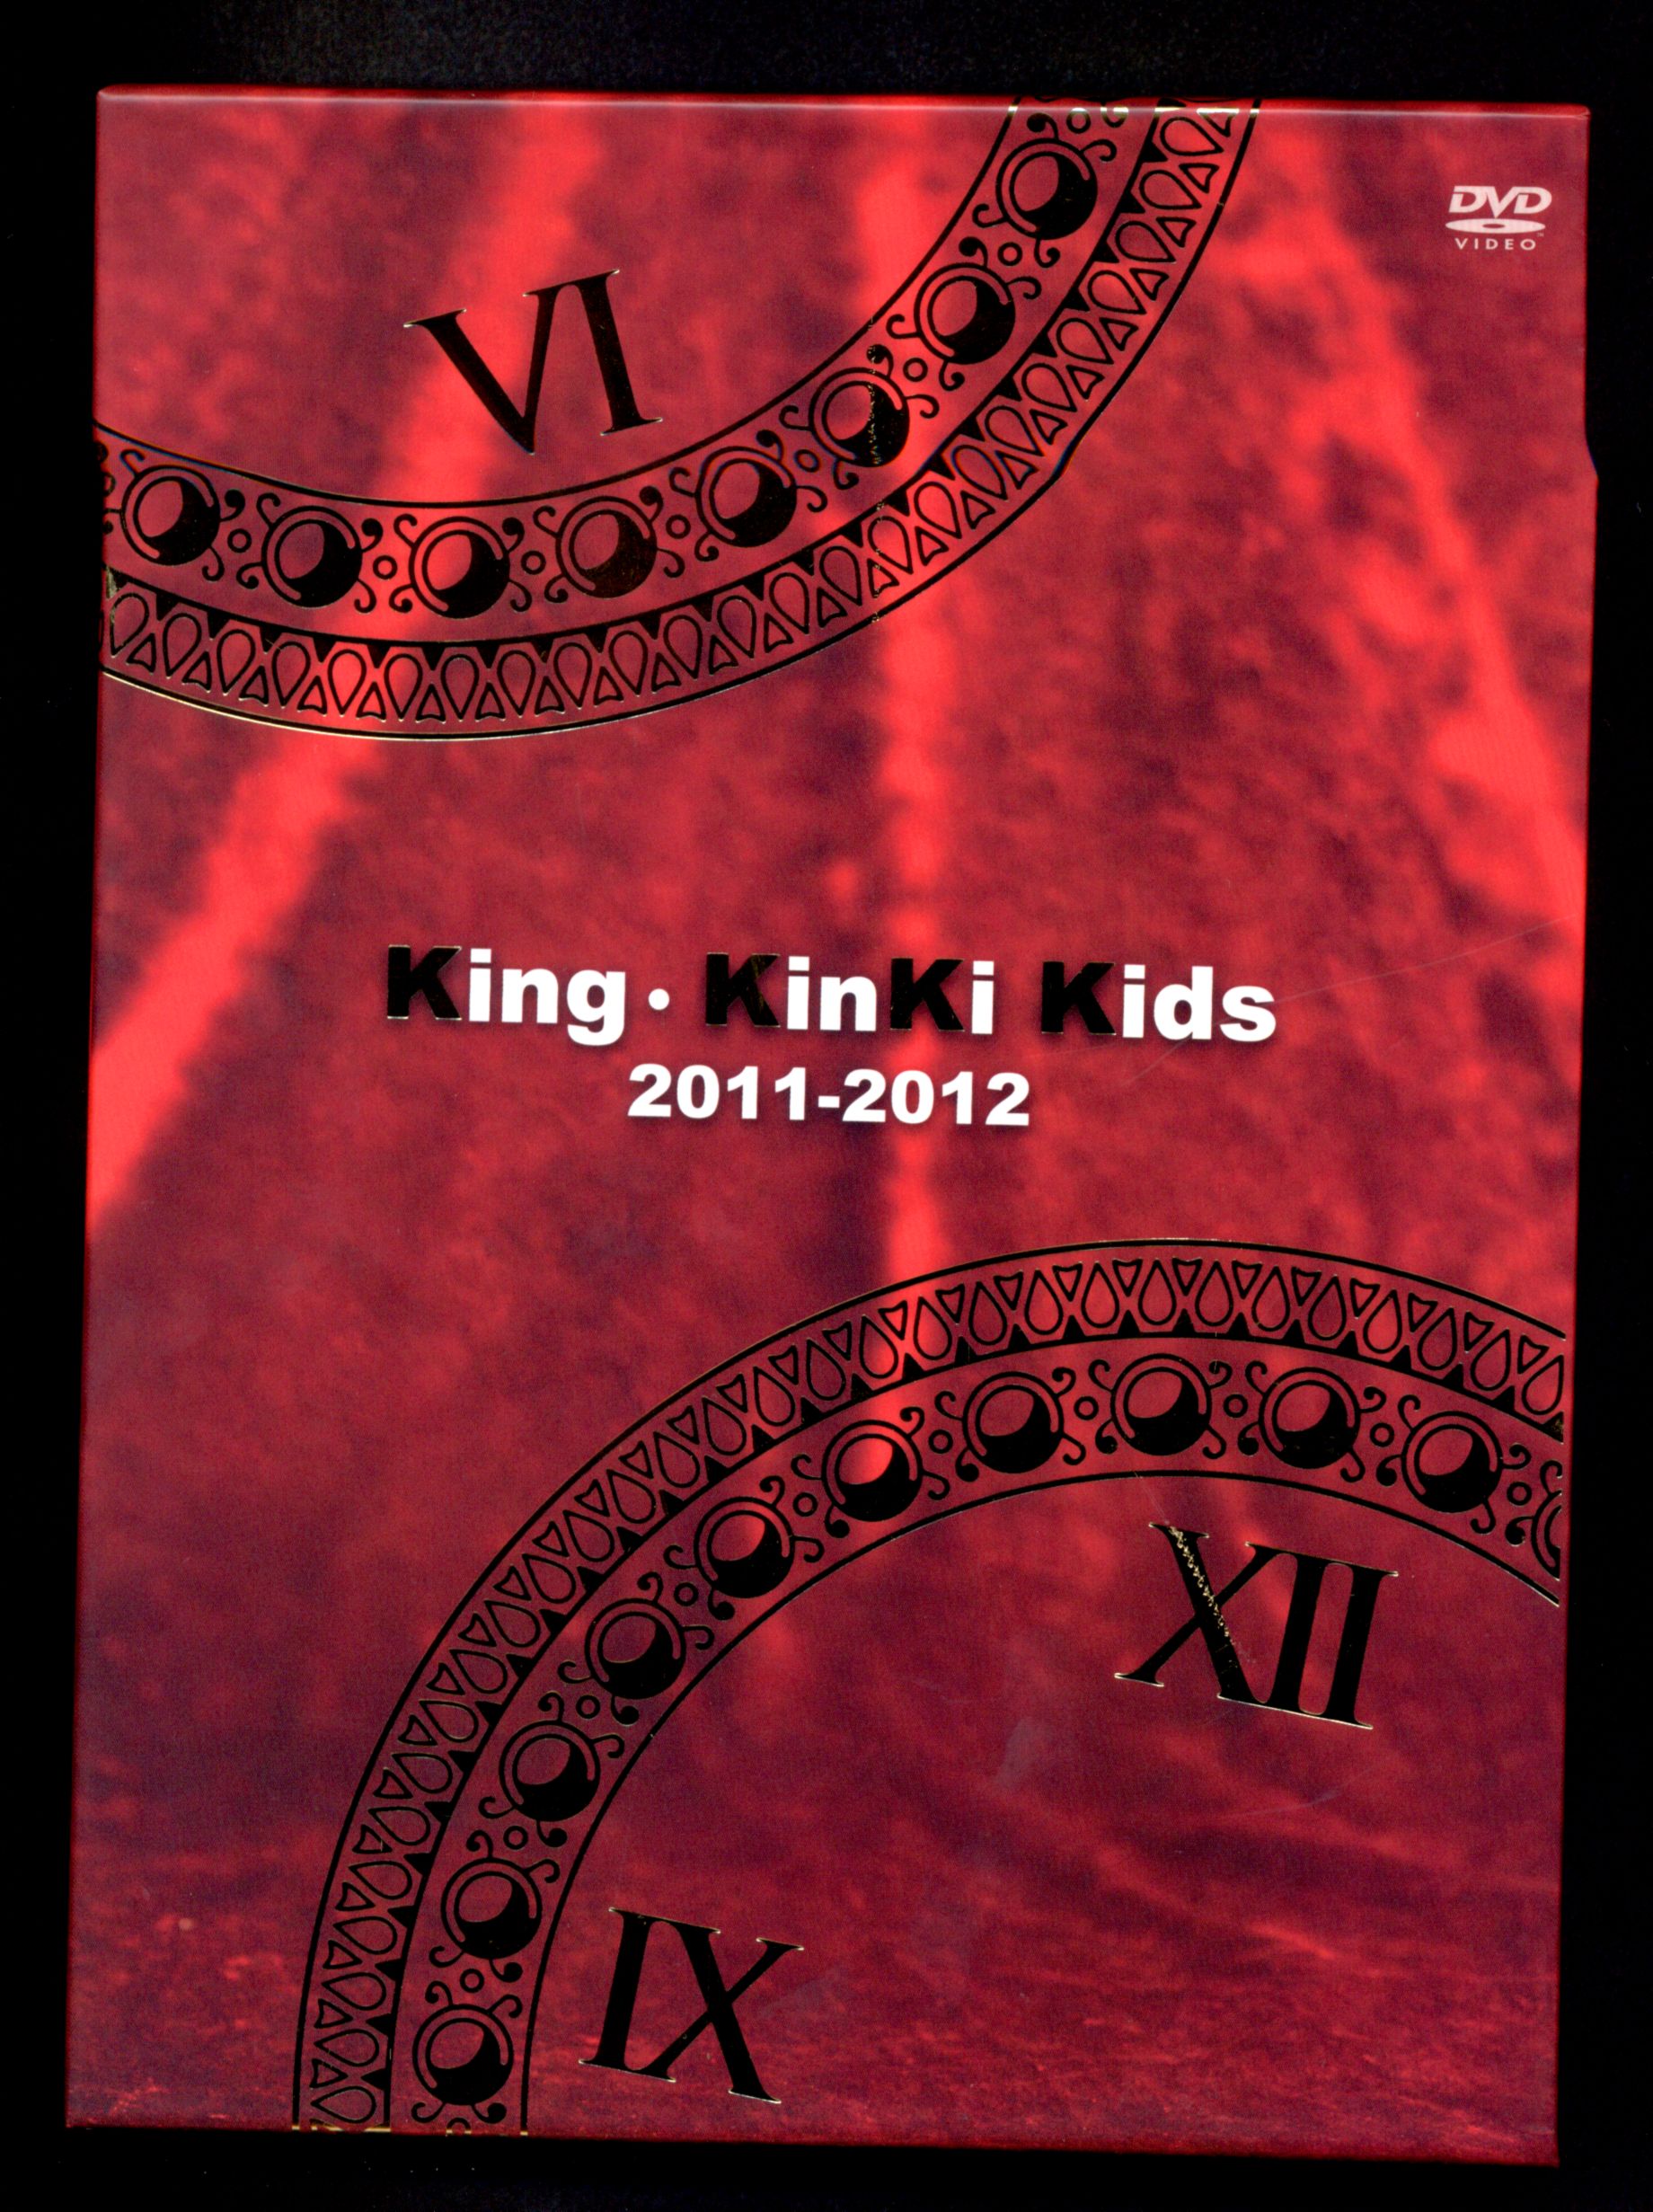 KinKi Kids king  DVD